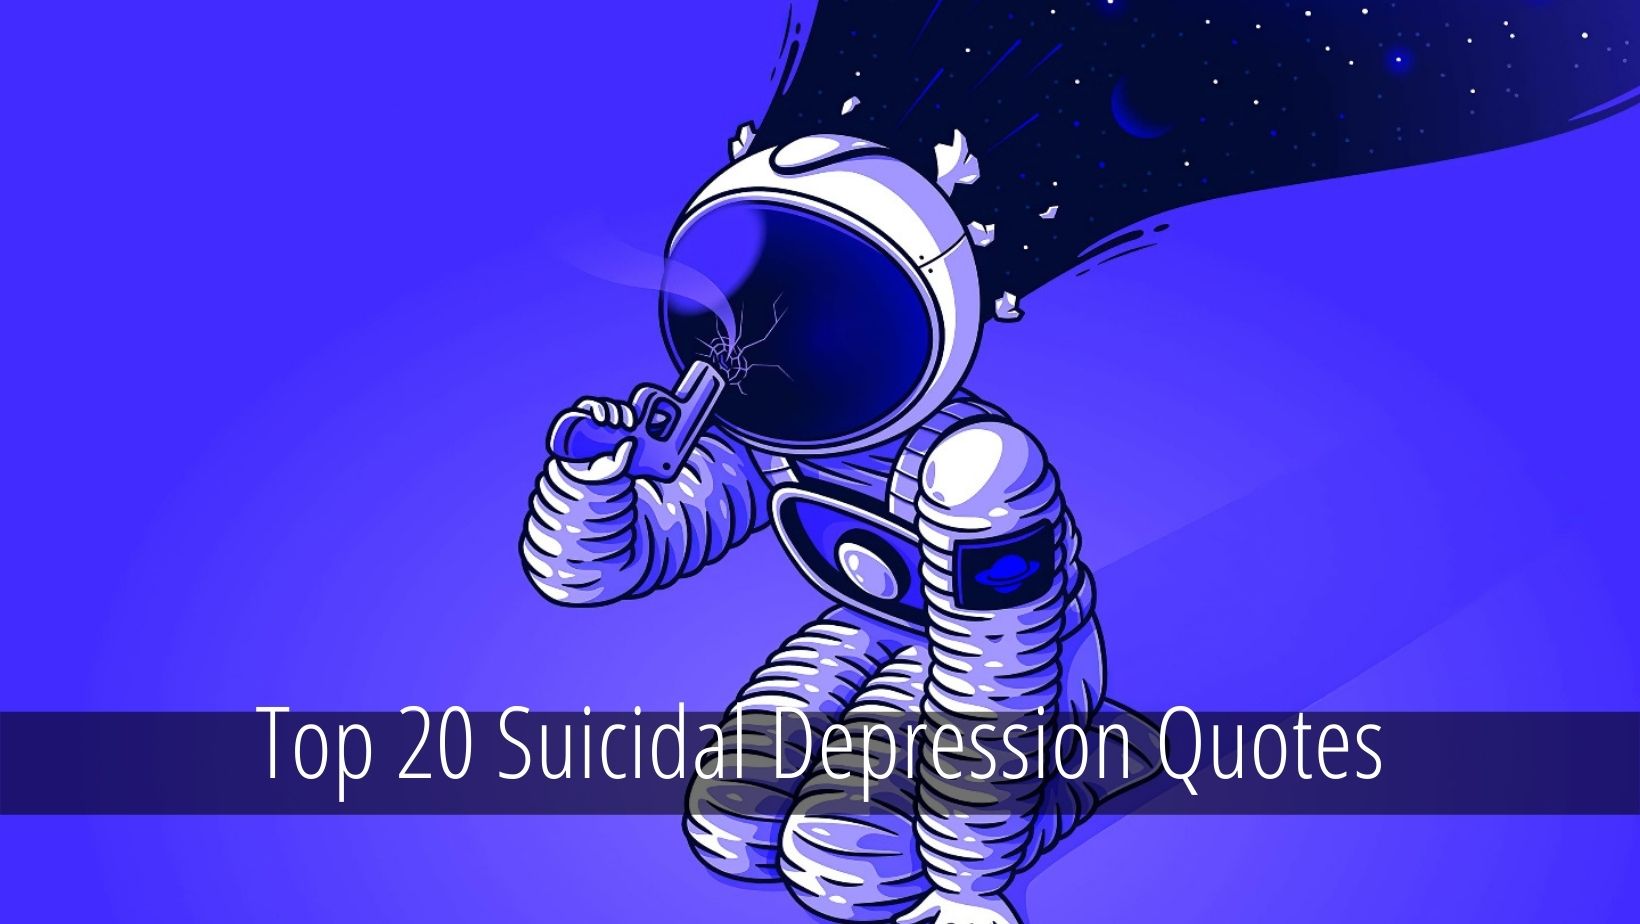 Suicidal Depression Quotes